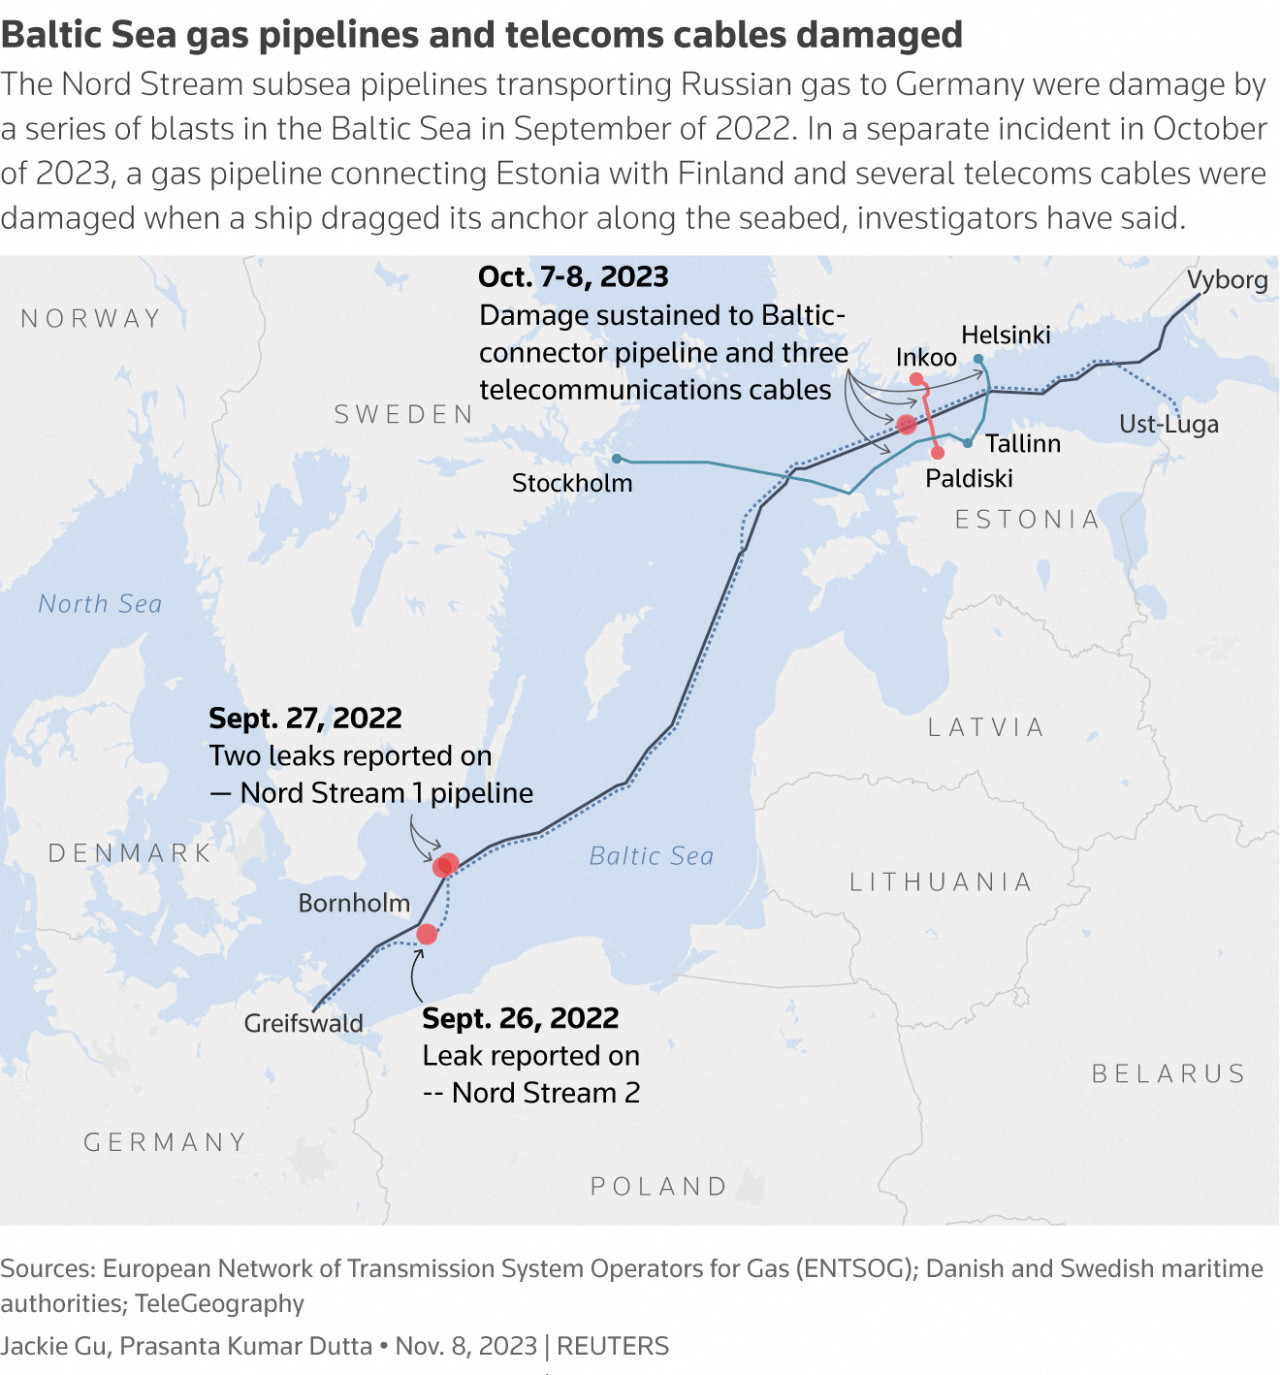 Tubería Nord Stream. El ataque de septiembre de 2022, que rompió el conducto entre Rusia y Alemania, fue denunciado por funcionarios occidentales como un acto de sabotaje.